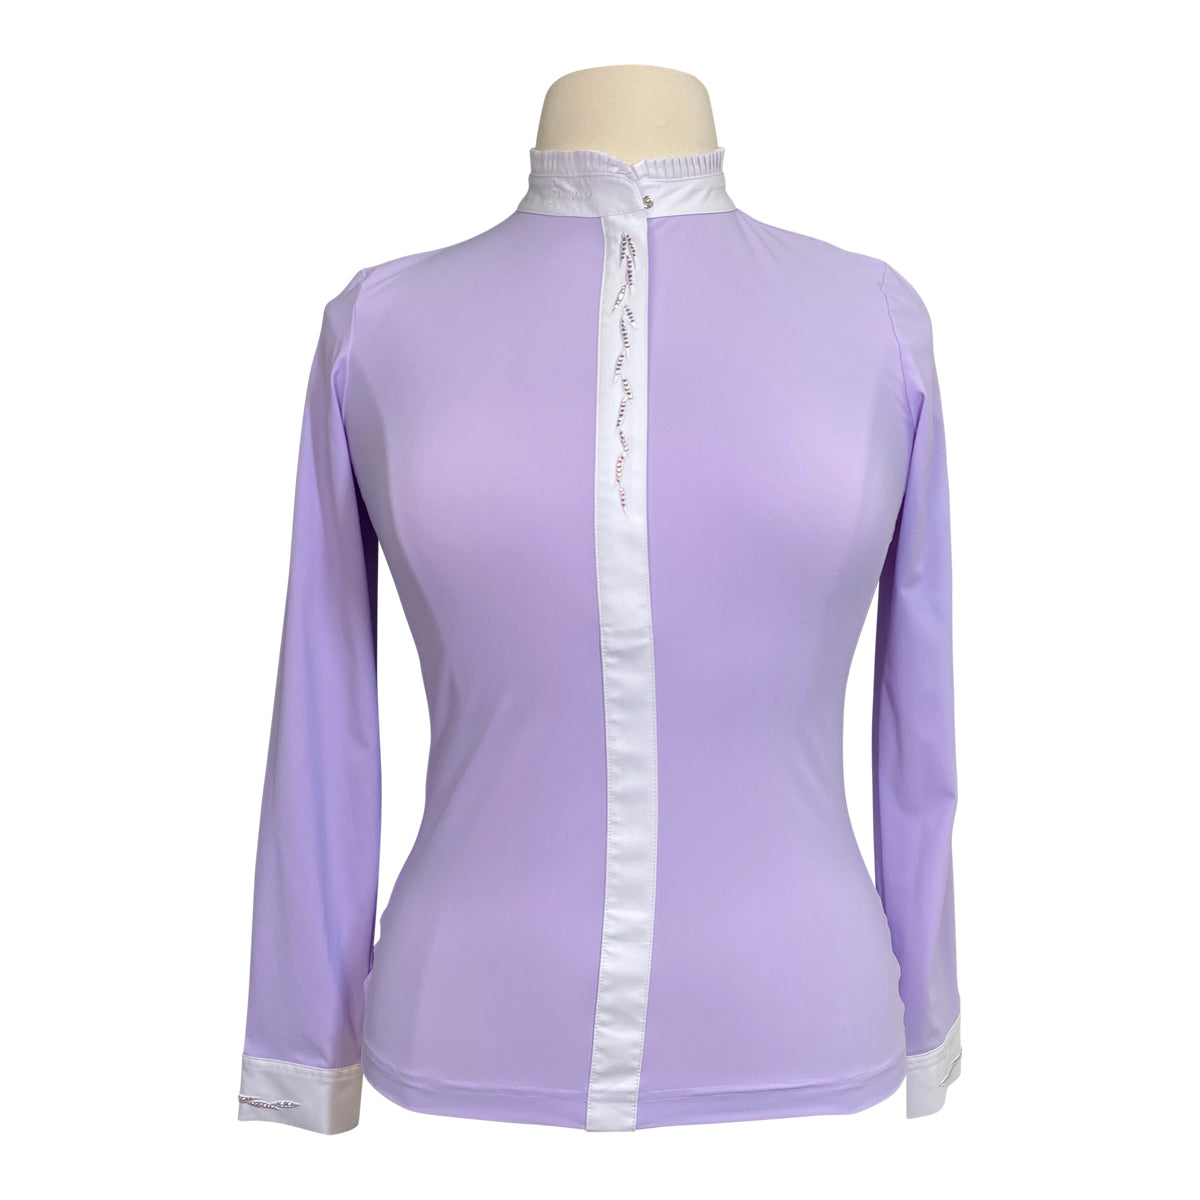 Samshield 'Juliette' Long-Sleeve Shirt in Lilac